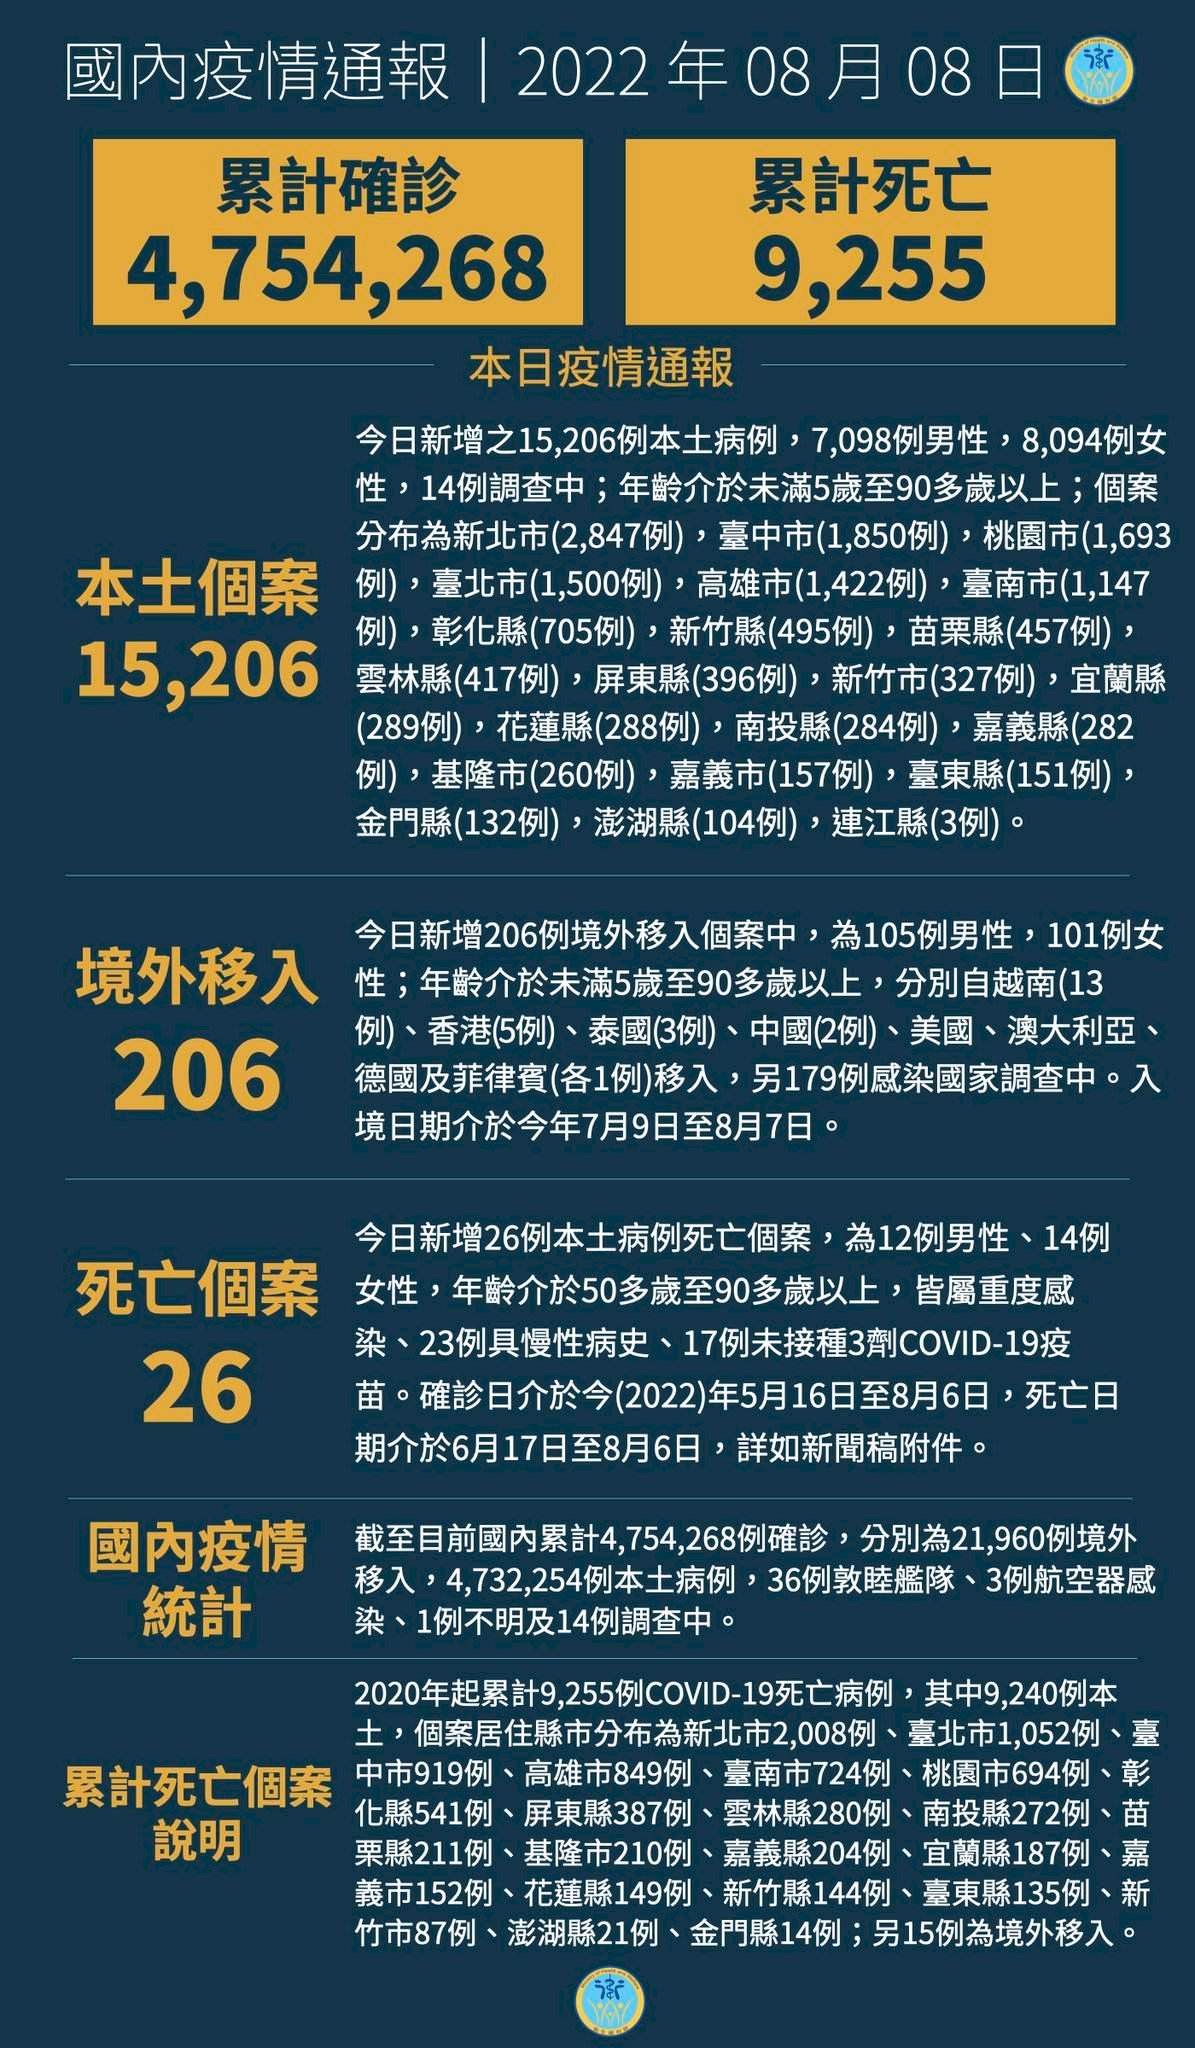 8/8, Đài Loan ghi nhận 15206 ca nhiễm COVID-19 trong nước, thấp nhất trong vòng 100 ngày kể từ 30/4